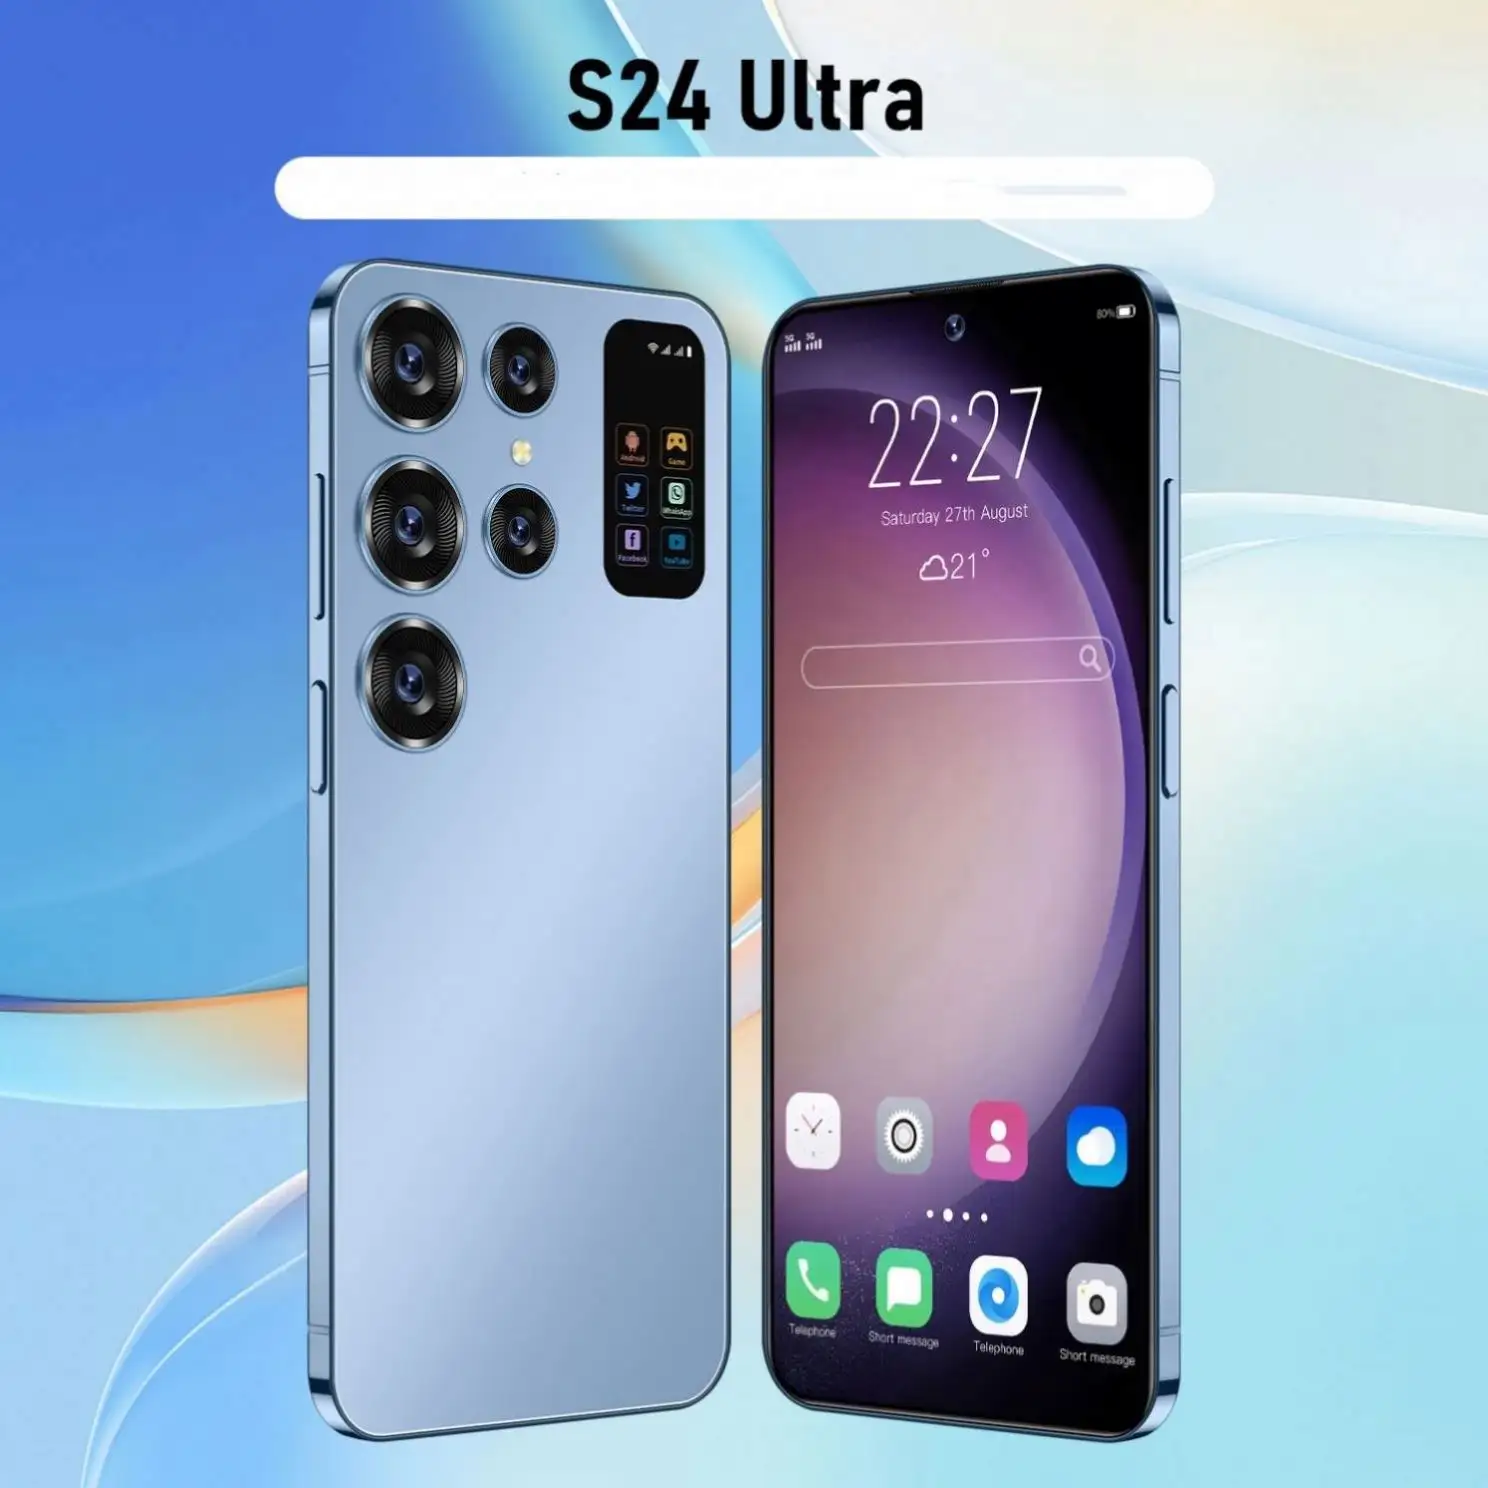 S24 Ultra 6 8 inç büyük ekran Android Smartphone ile özel Carcasas para Celulares Hotwav whole13 Pro Wholesa için en iyi anlaşma